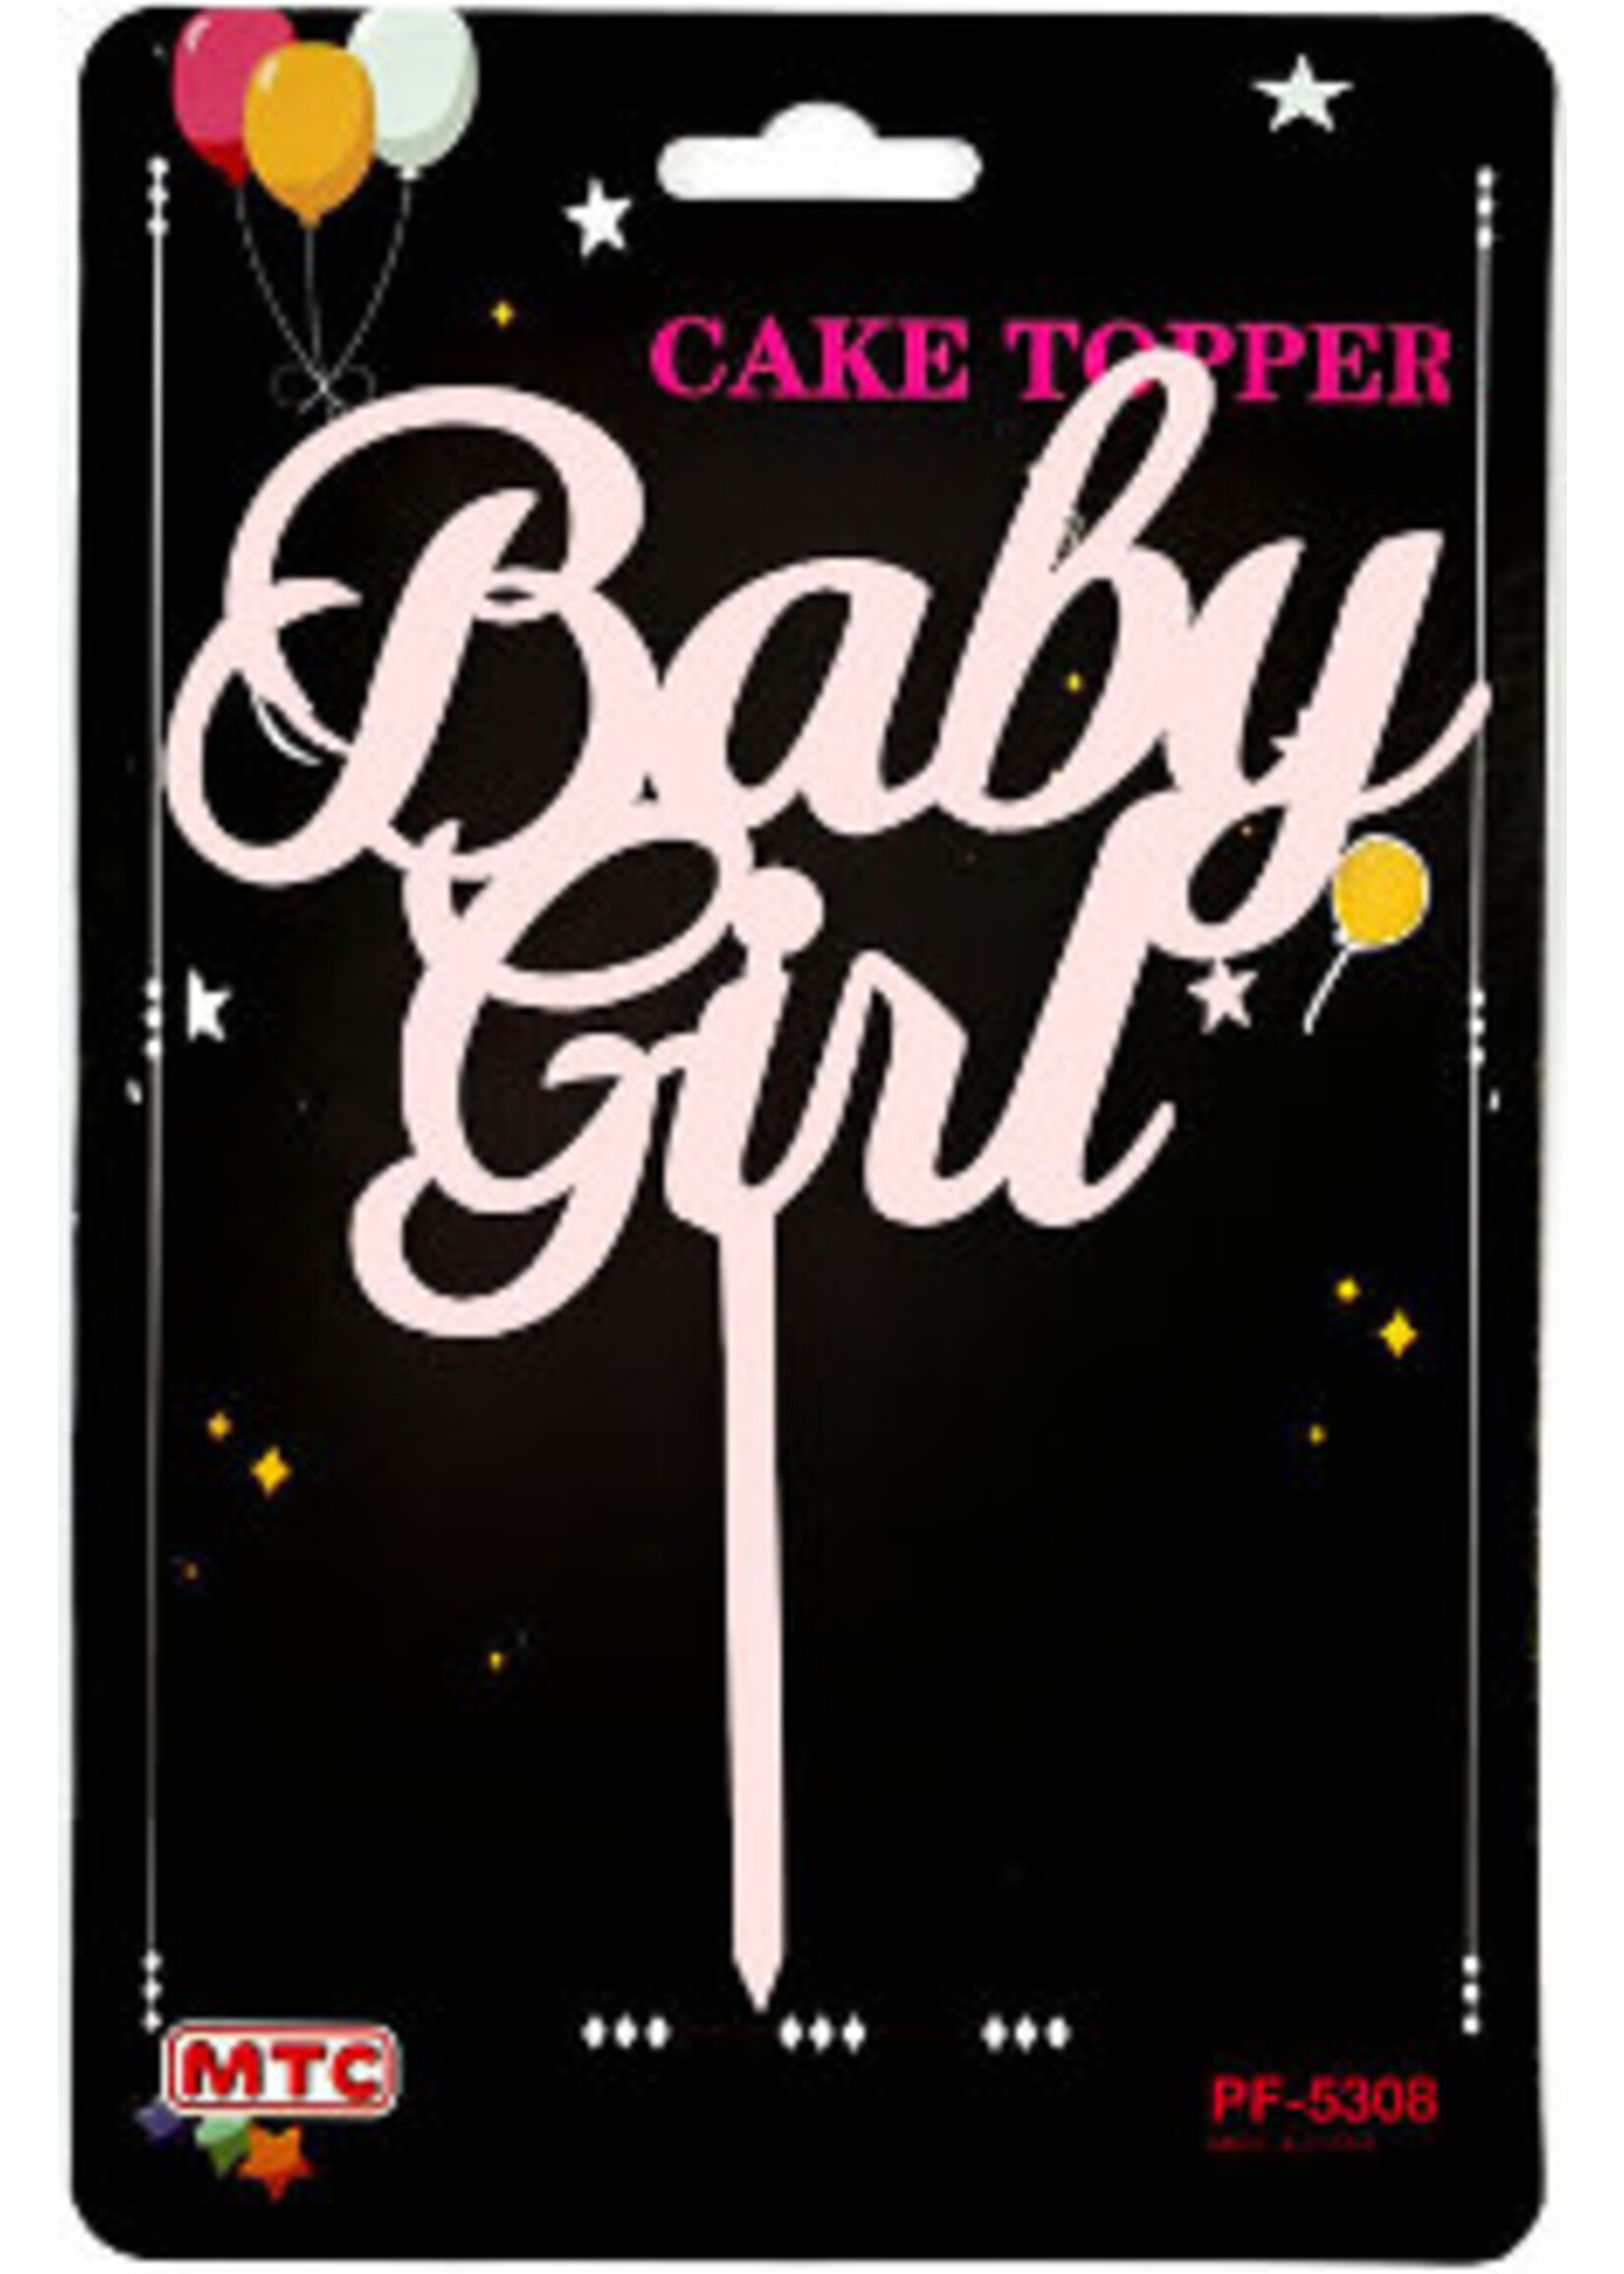 Baby Girl Cake Topper